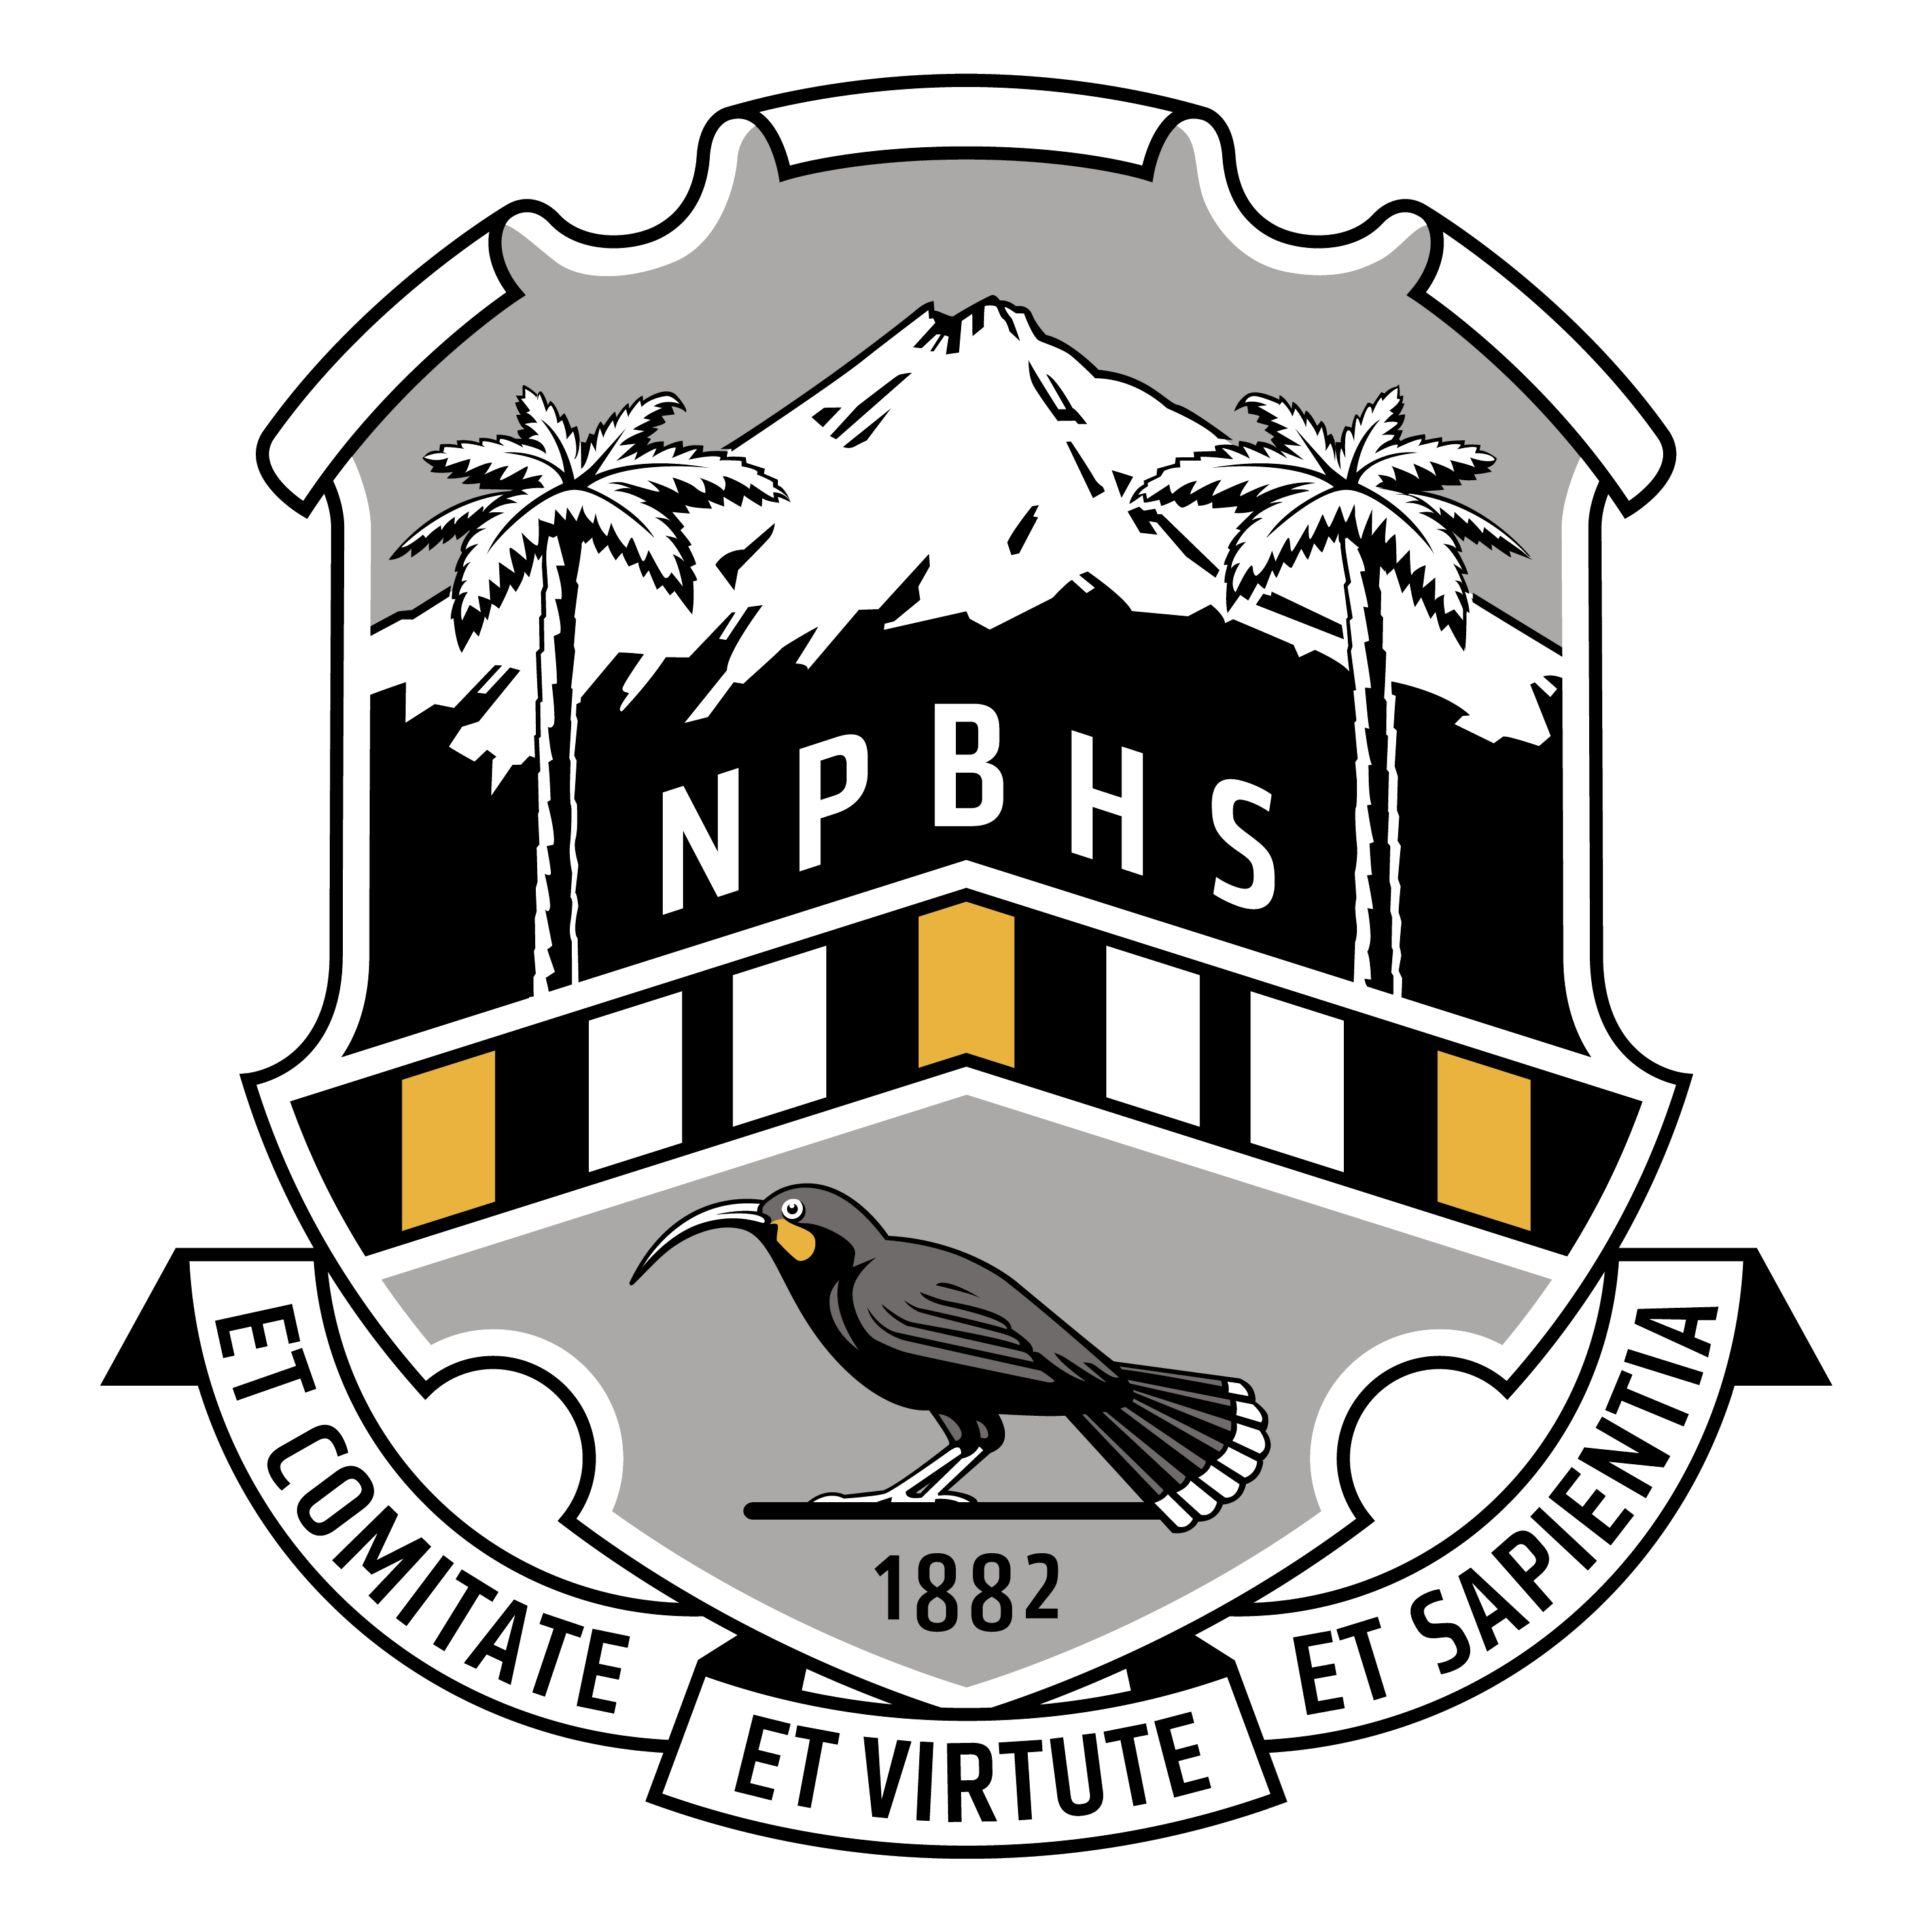 NPBHS Online Shop